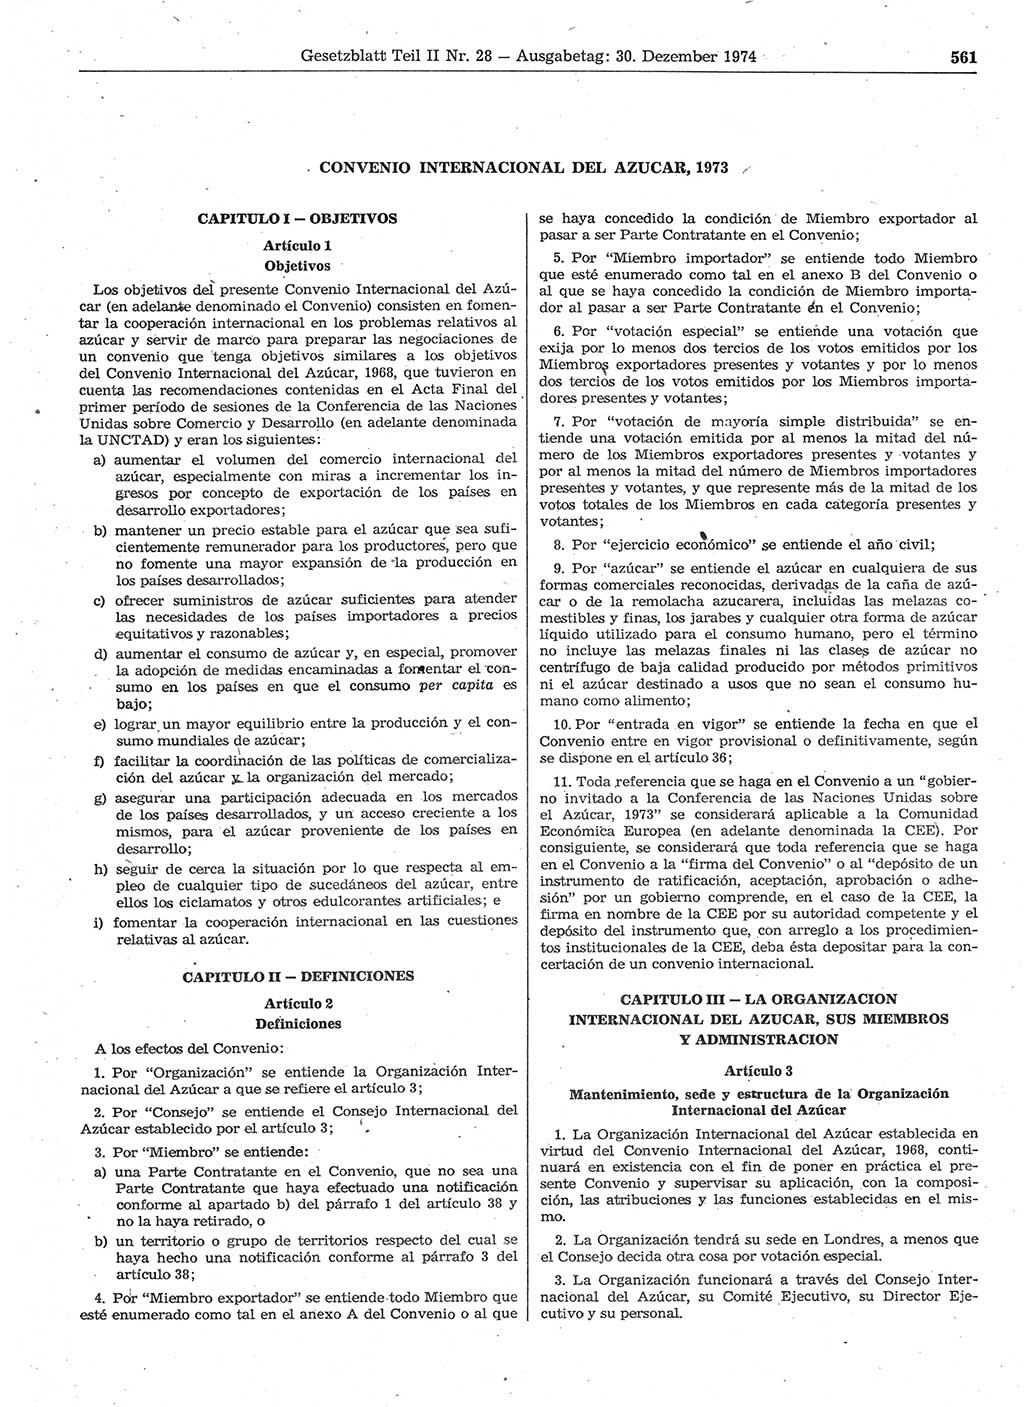 Gesetzblatt (GBl.) der Deutschen Demokratischen Republik (DDR) Teil ⅠⅠ 1974, Seite 561 (GBl. DDR ⅠⅠ 1974, S. 561)